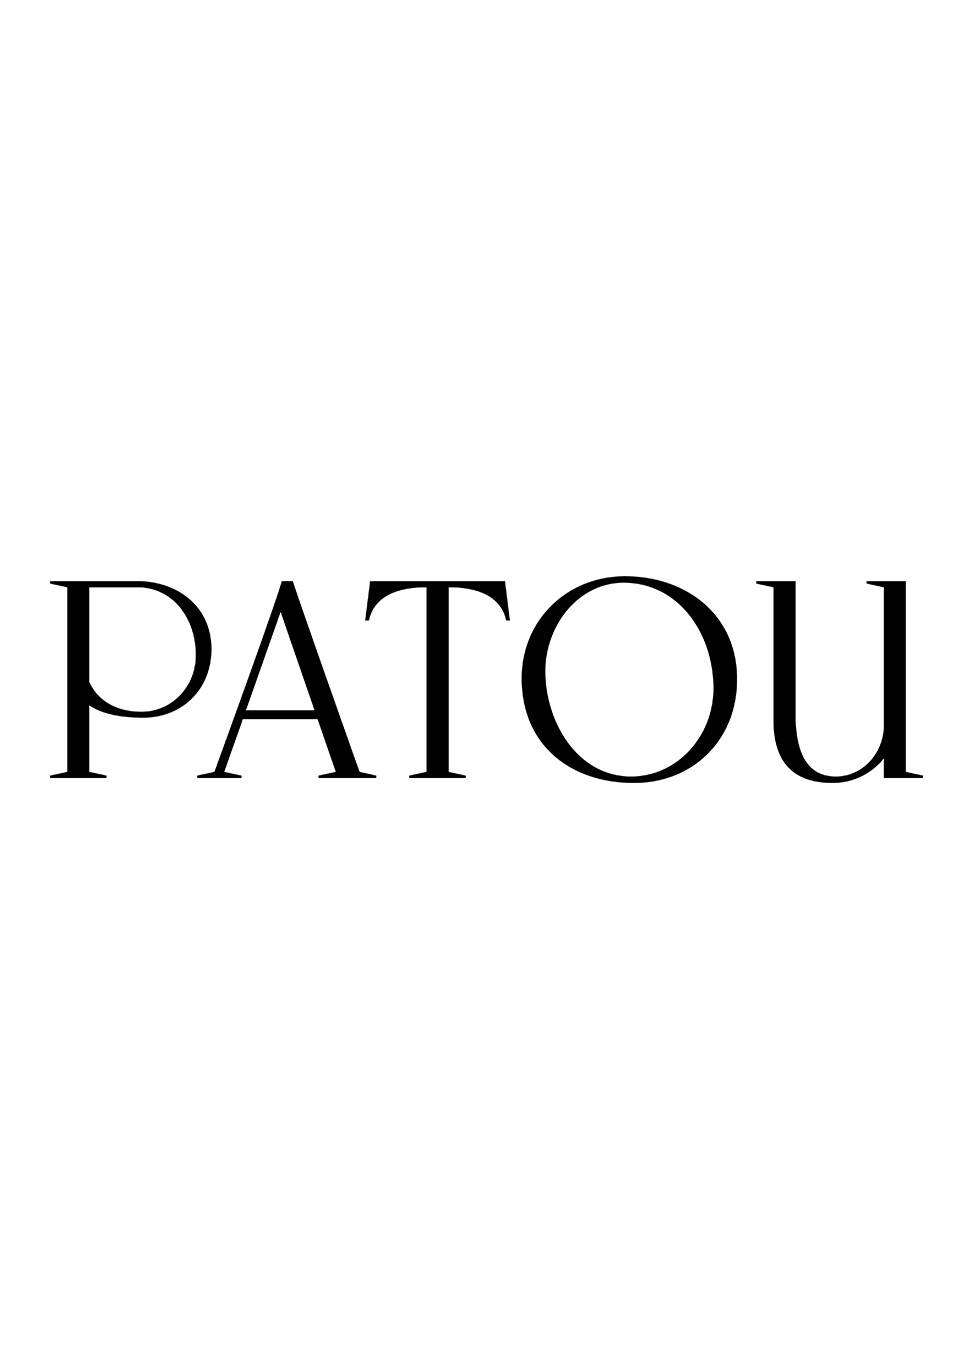 Patou vient d'ouvrir son site de vente en ligne